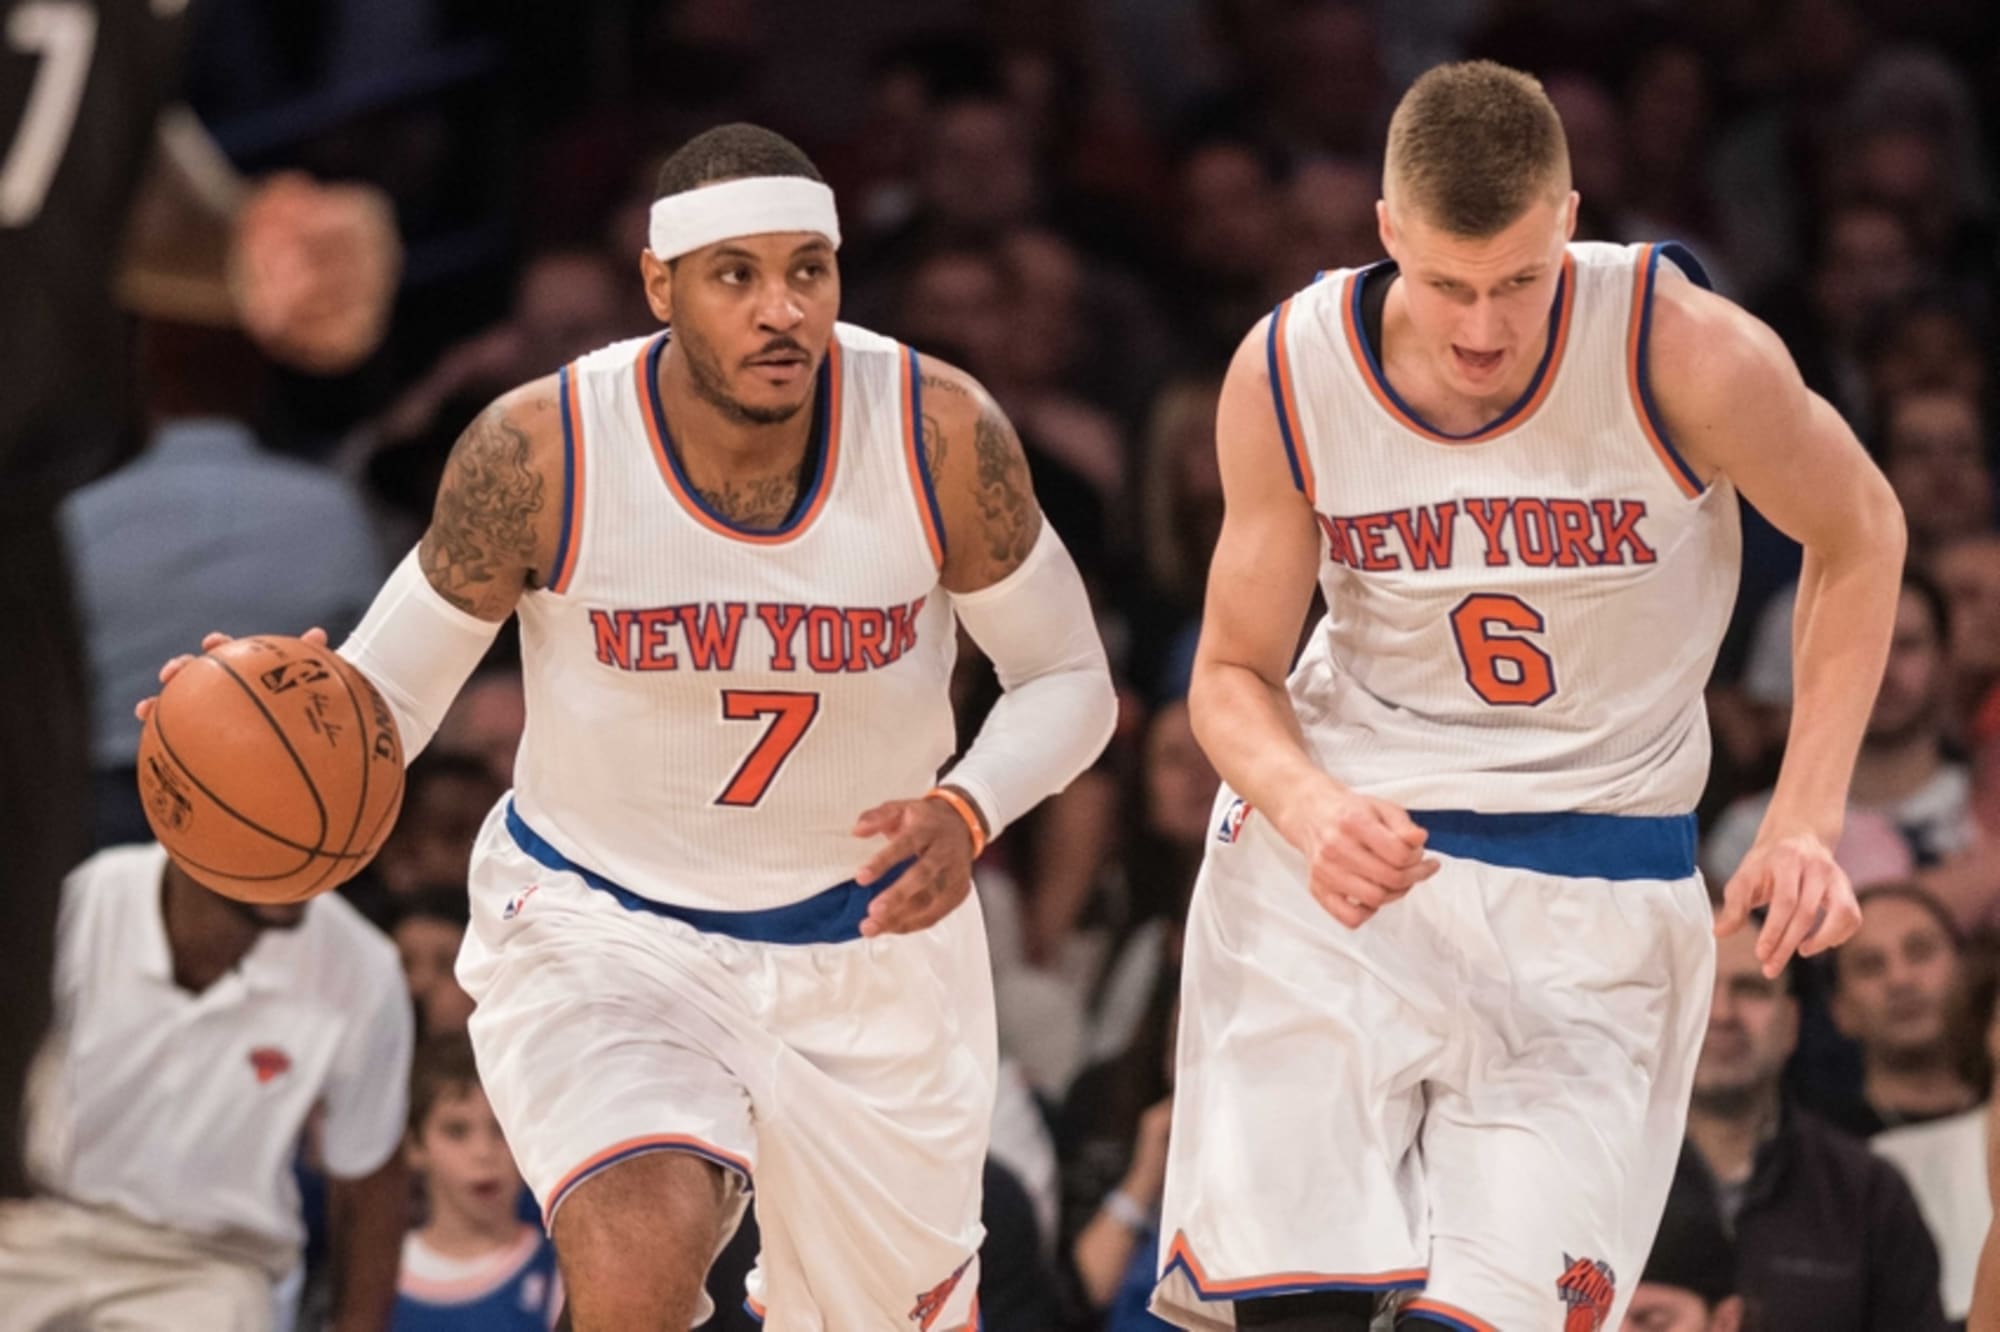 NBA Veteran: New York Knicks' Carmelo Anthony 'Tried To Take My